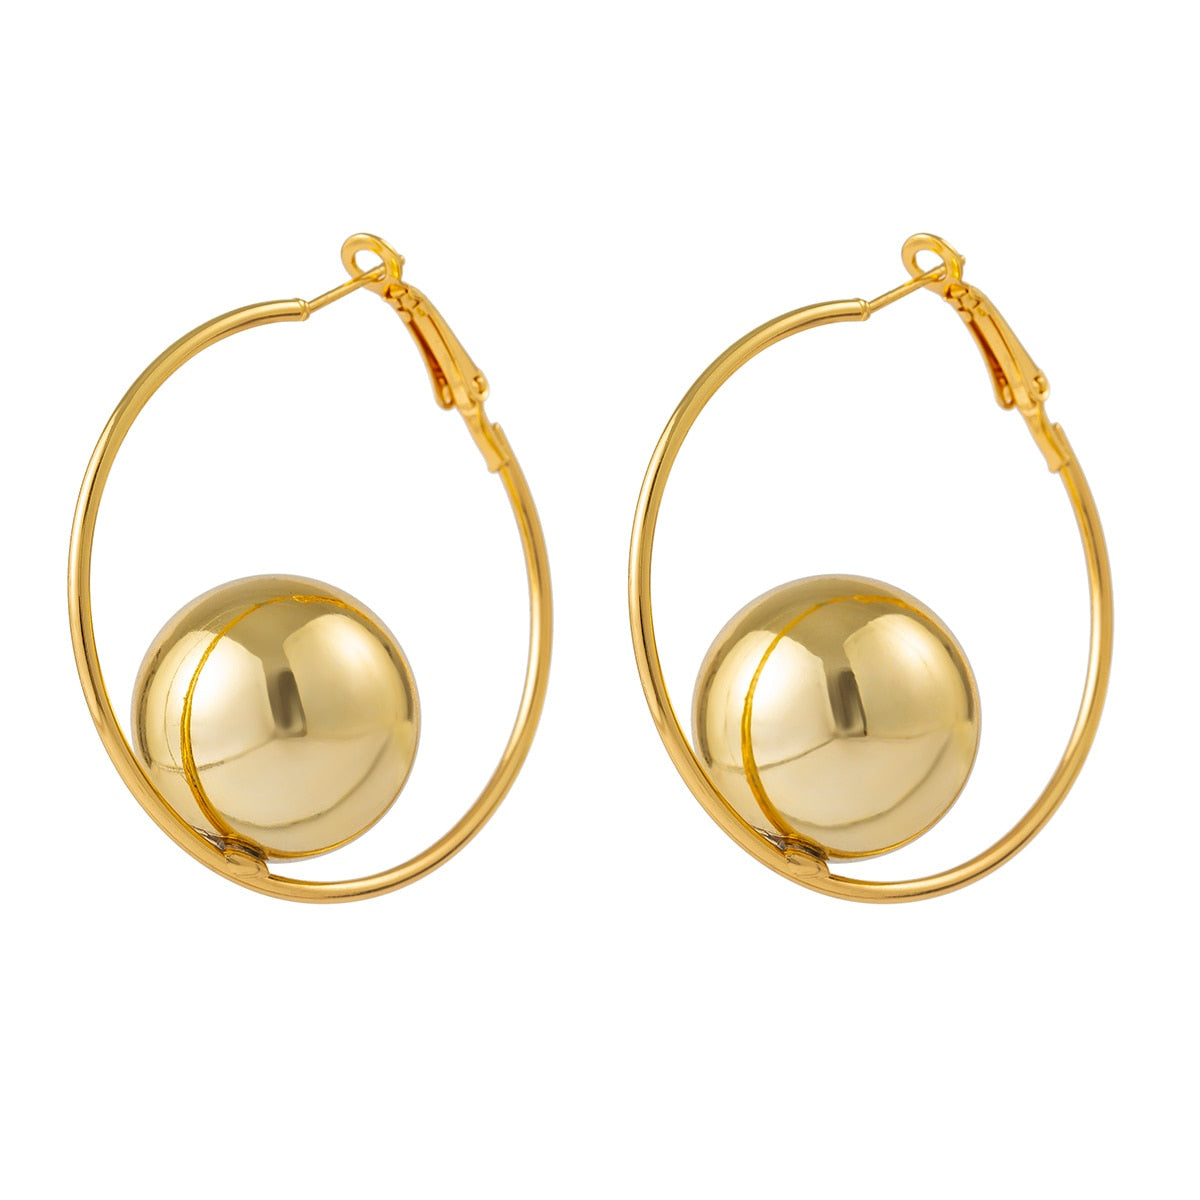 SW Circular Ball Hoop Earrings